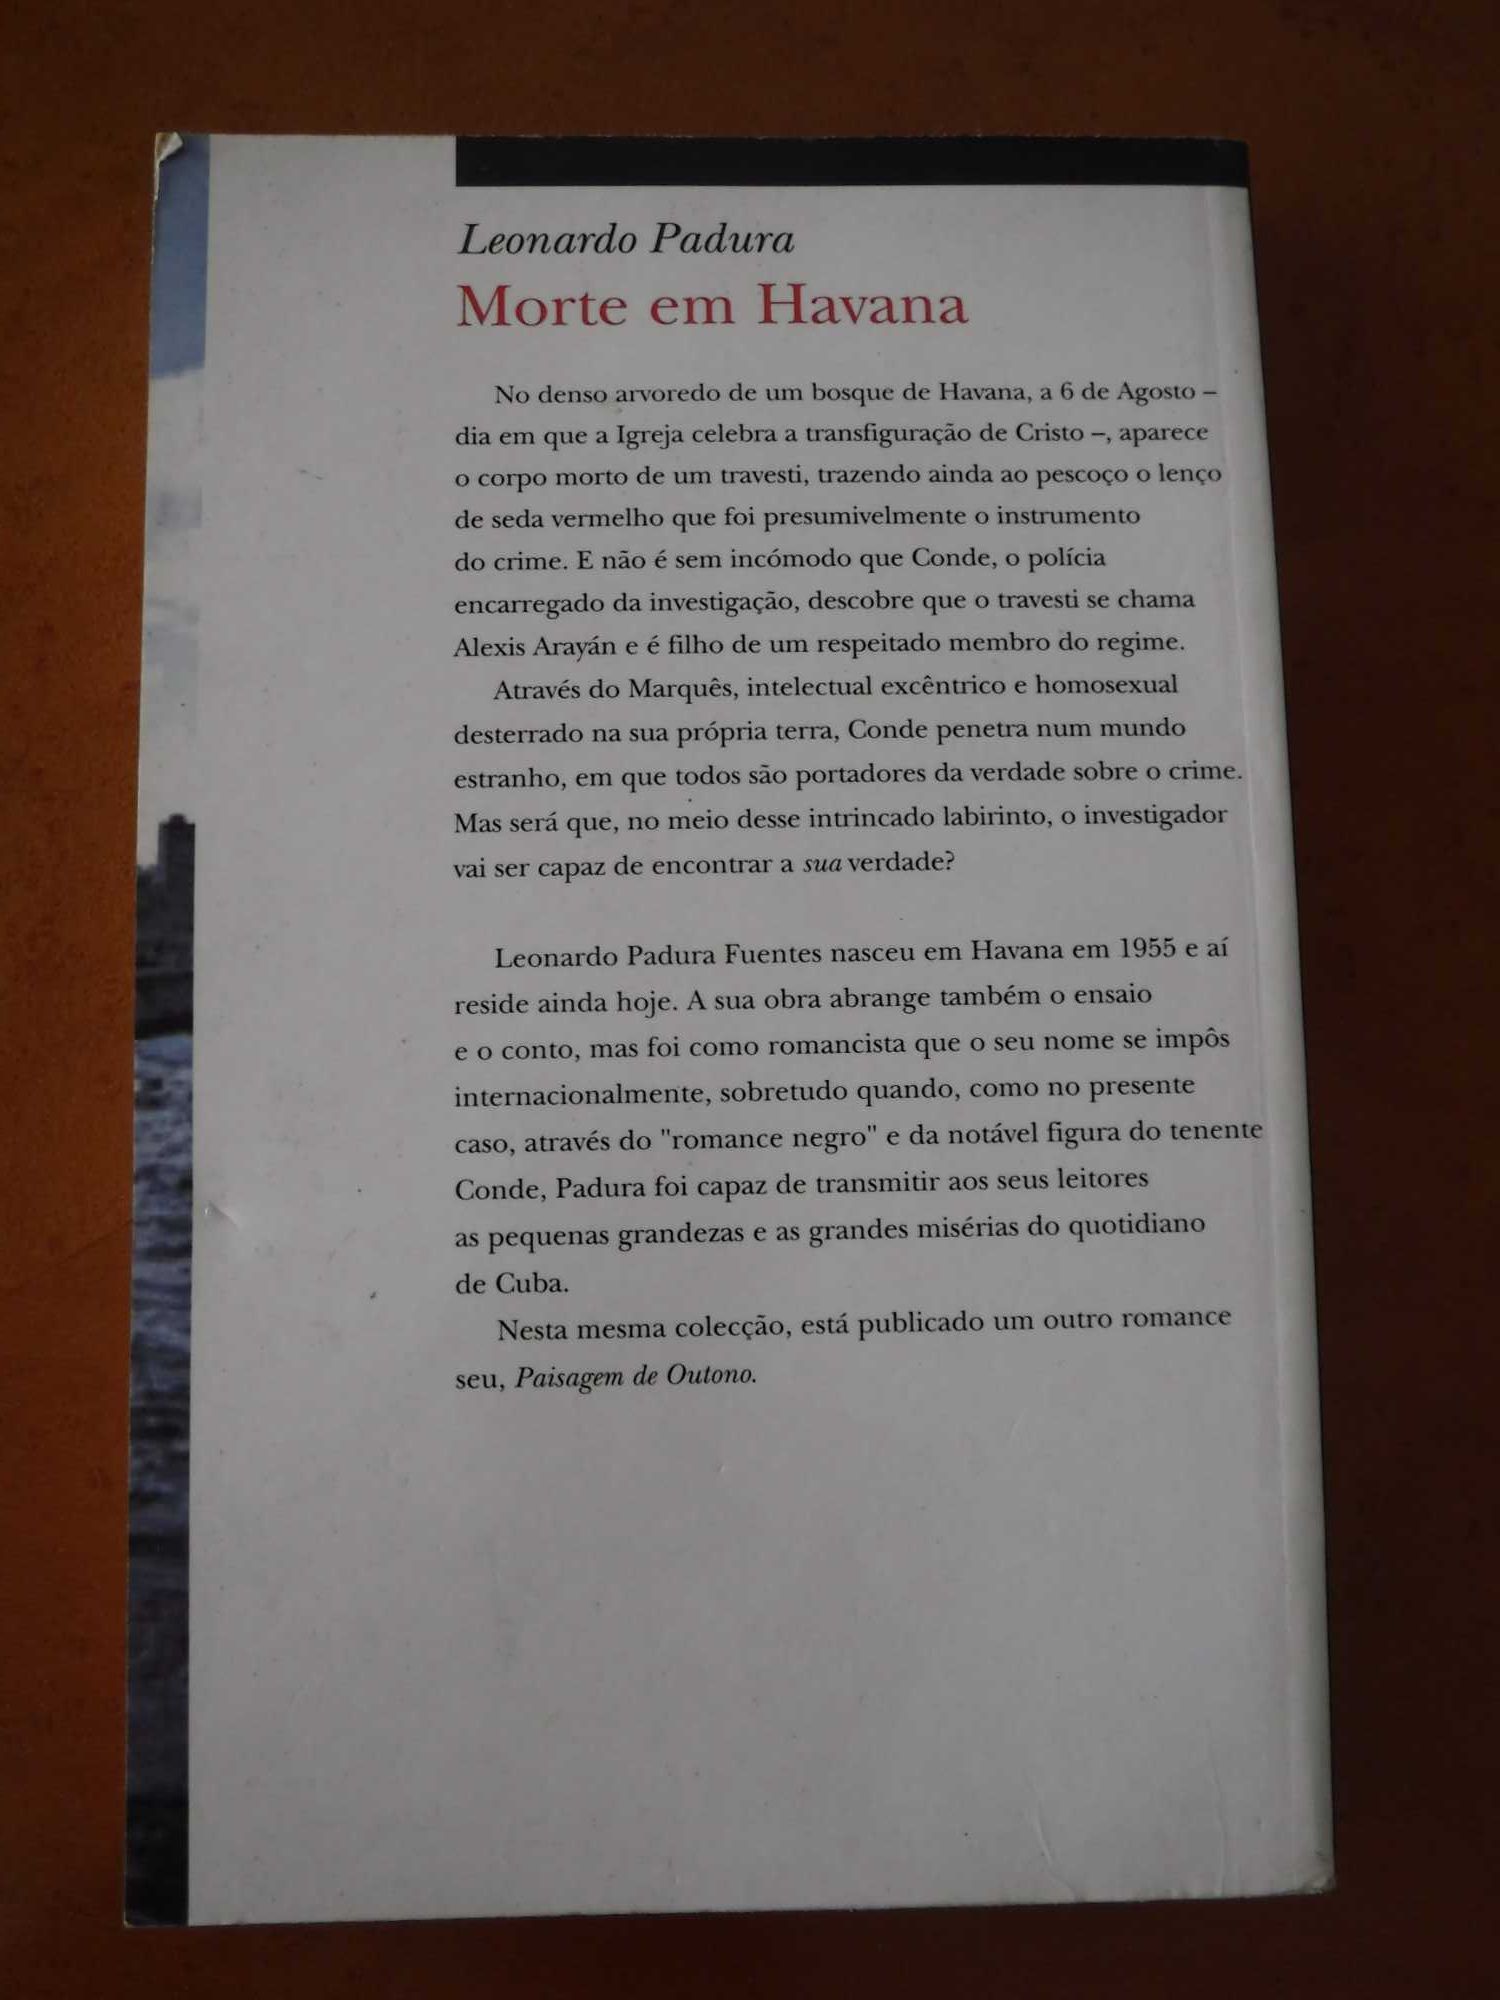 Morte em Havana - Leonardo Padura